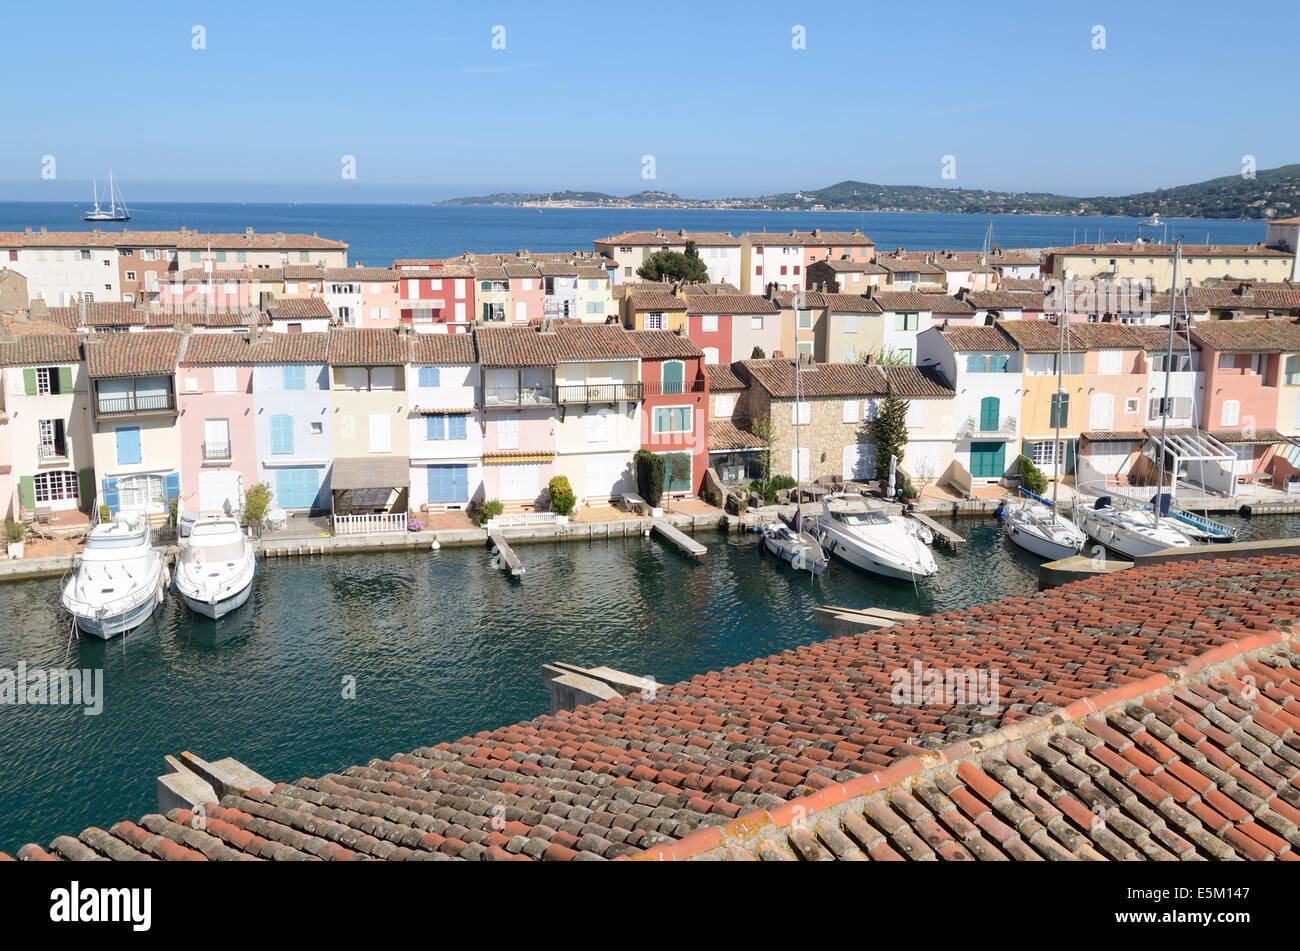 Blick über Dächer, Yachten & Häuser im Resort Stadt Port Grimaud Var Côte d ' Azur Provence Frankreich Stockfoto